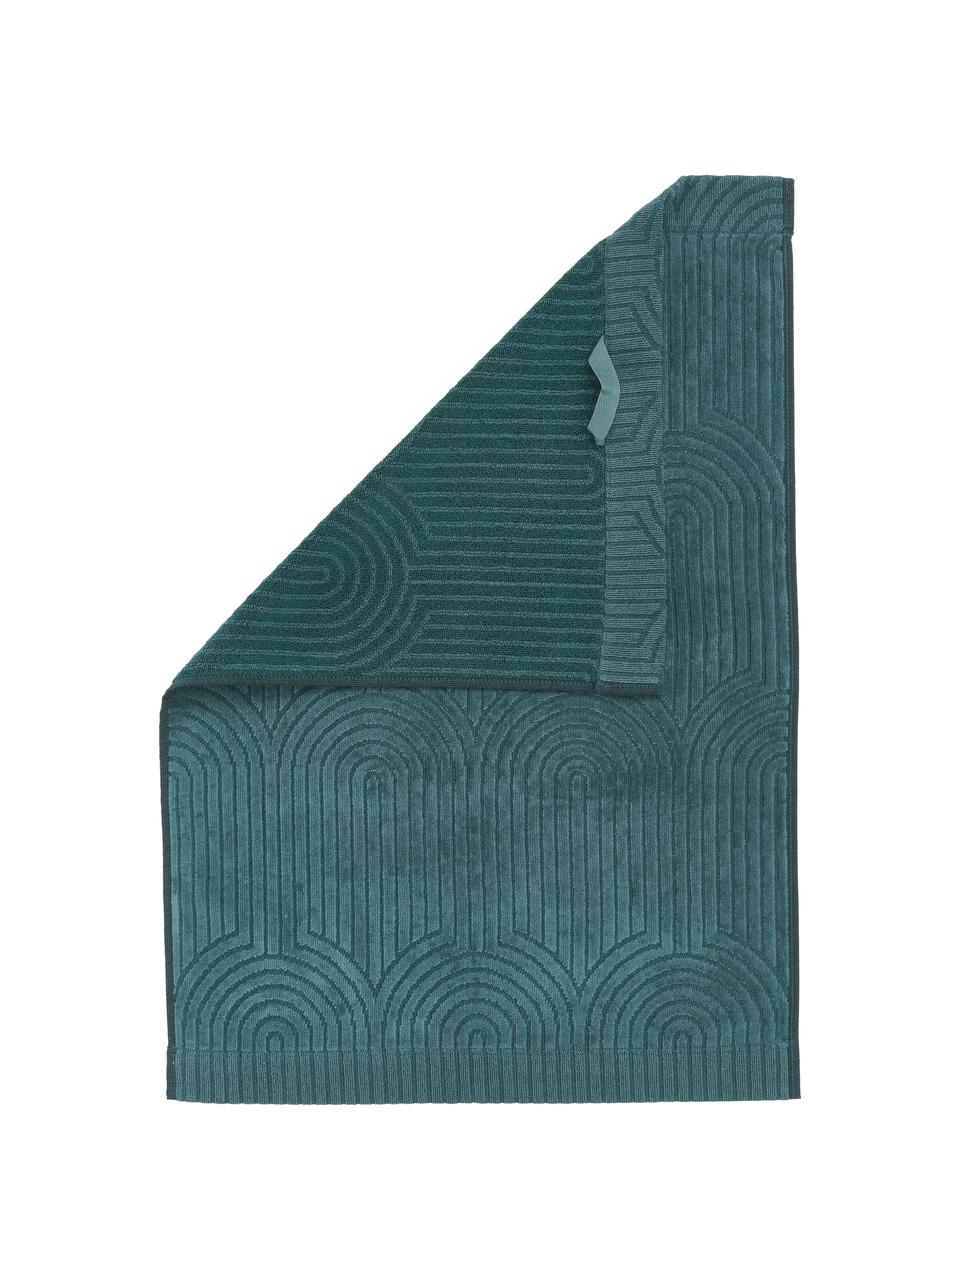 Handtuch Janet in verschiedenen Größen, mit grafischem Reliefmuster, 100% Baumwolle, BCI-zertifiziert, Smaragdgrün, Handtuch, B 50 x L 70 cm